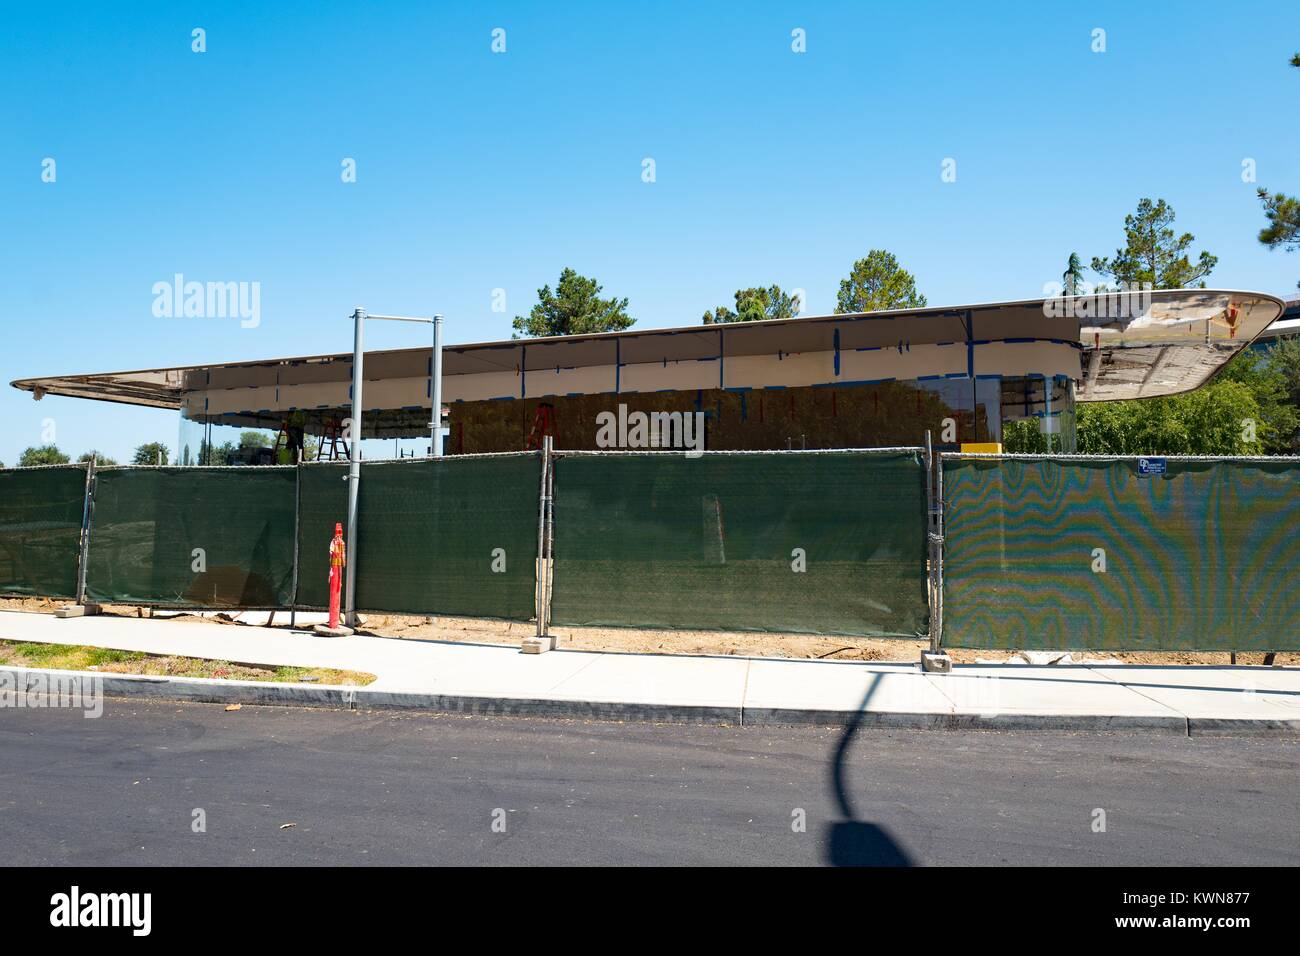 Un edificio parcialmente visible detrás de una valla en construcción Pruneride Avenue en el Apple Park, conocida coloquialmente como "La nave espacial", la nueva sede de Apple Inc en el Silicon Valley de la ciudad de Cupertino, California, 25 de julio de 2017. Foto de stock